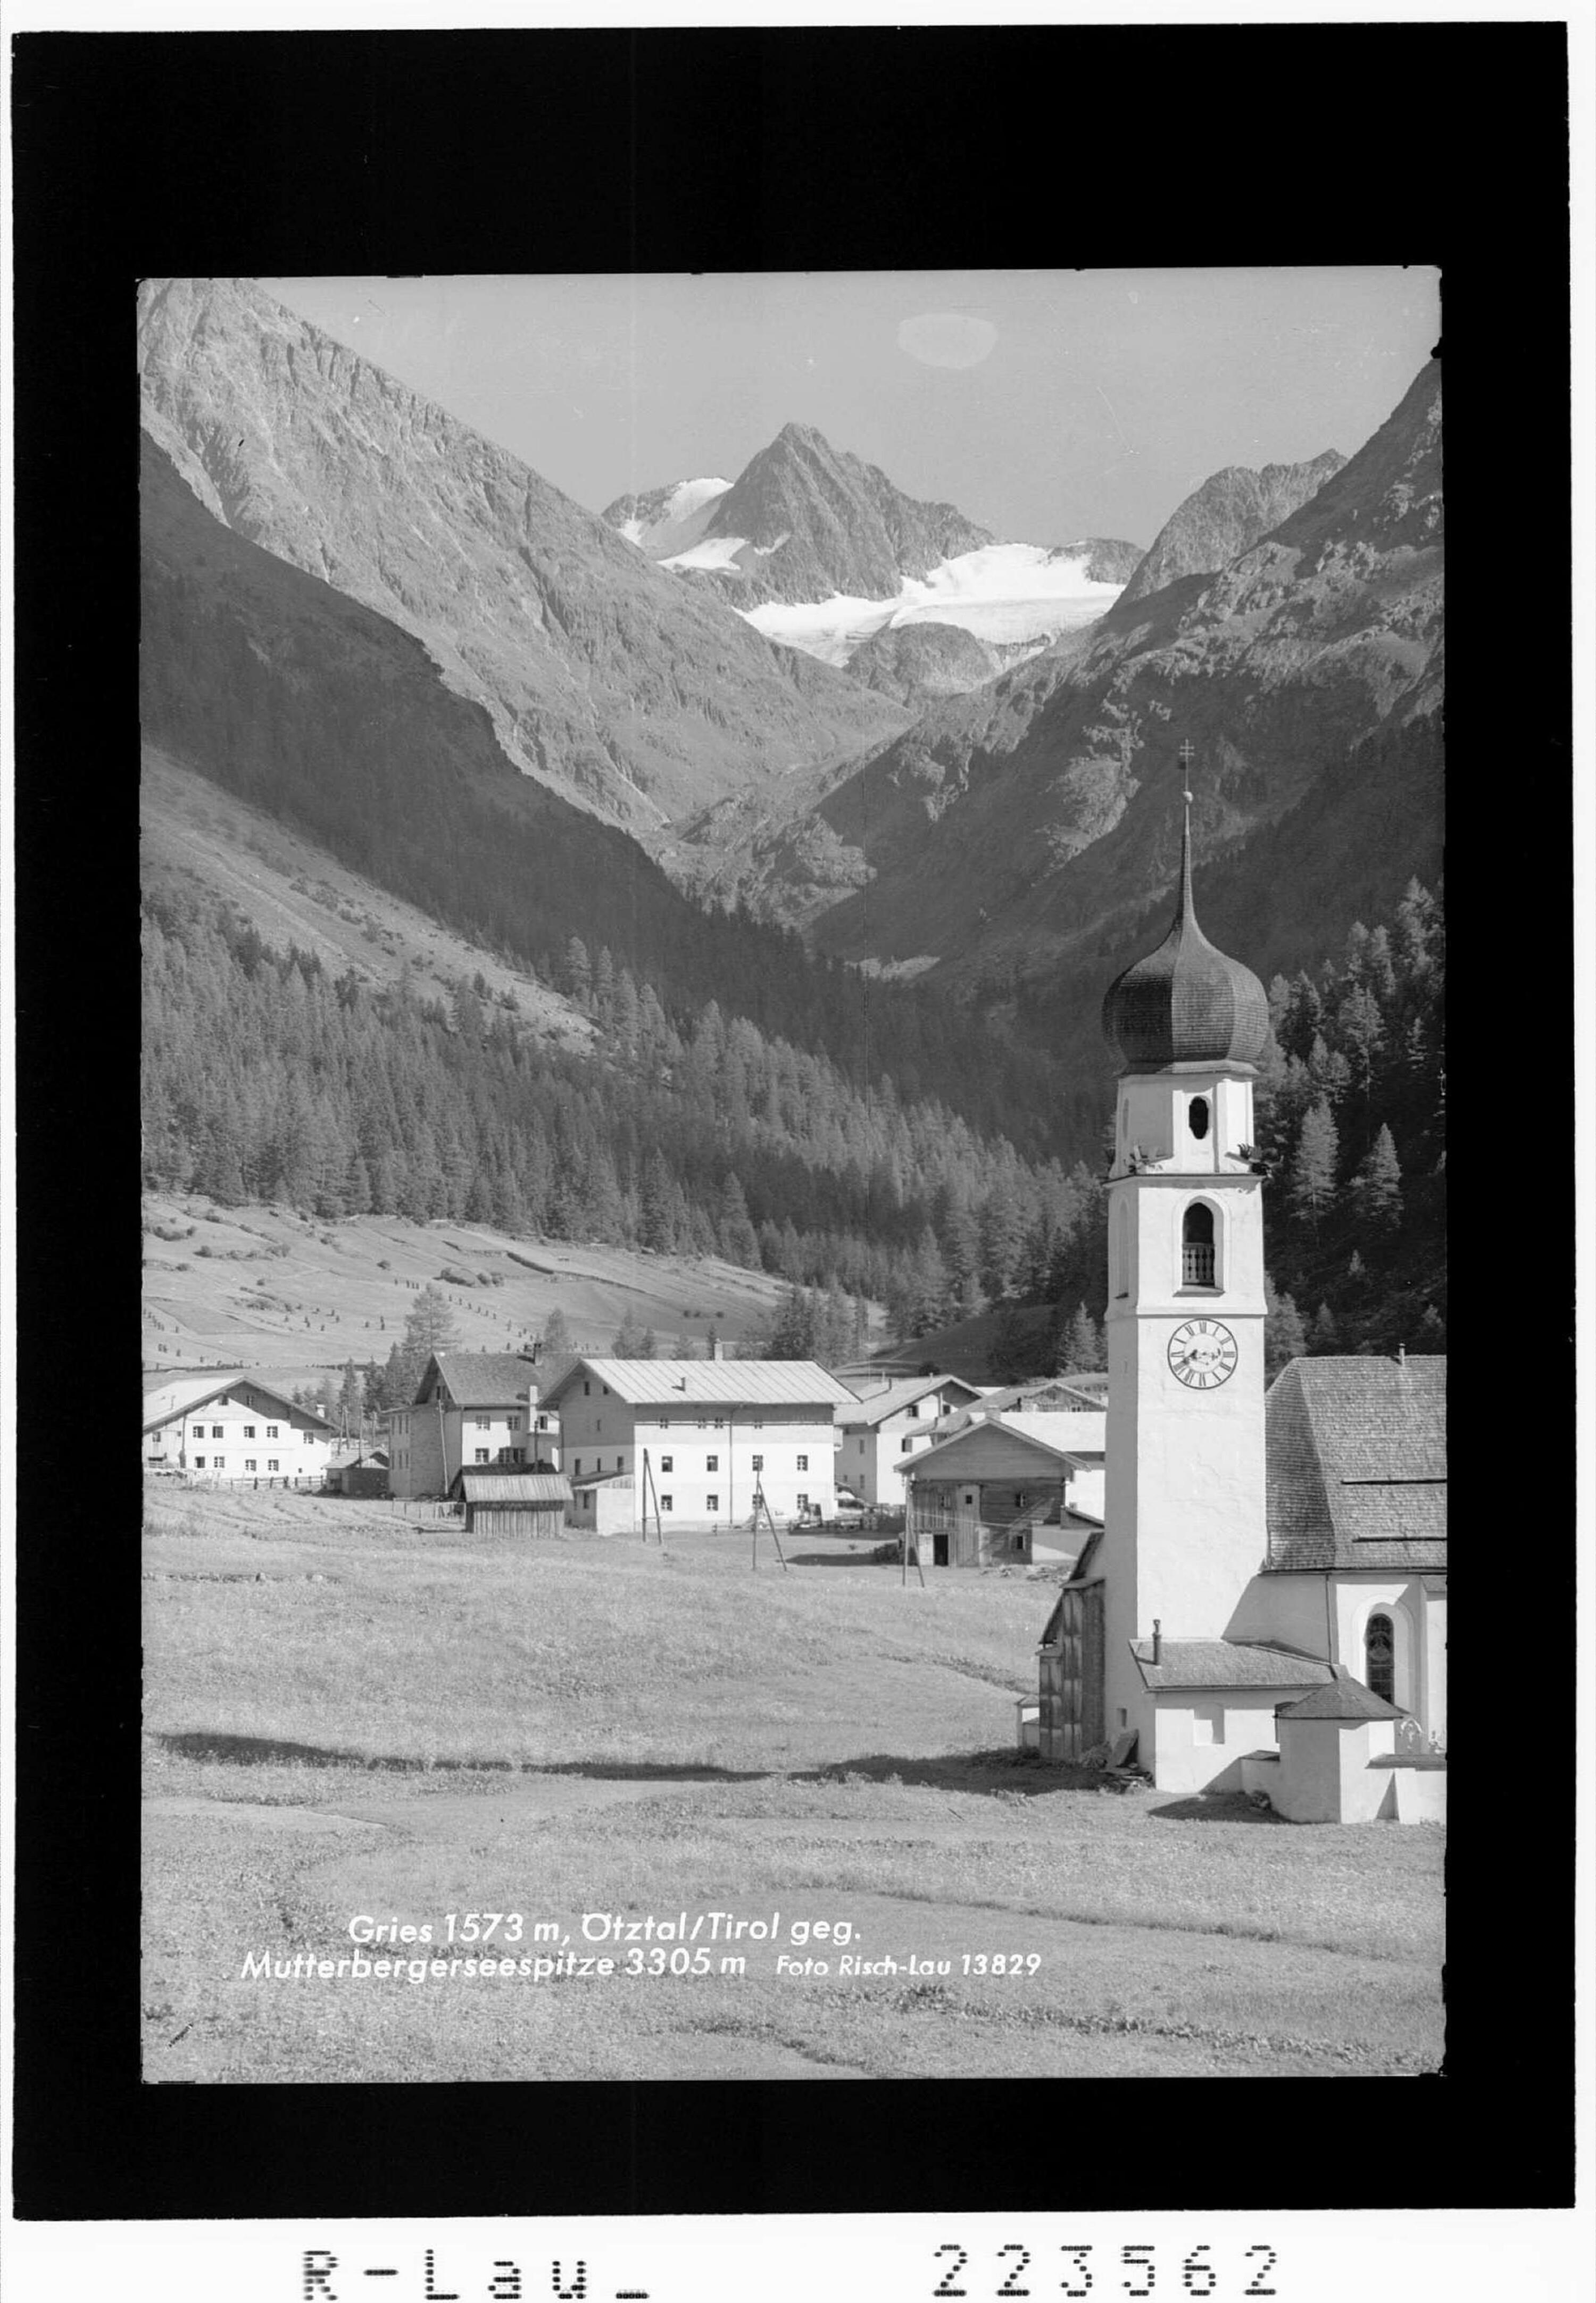 Gries 1573 m / Ötztal / Tirol gegen Mutterbergerseespitze 3305 m></div>


    <hr>
    <div class=